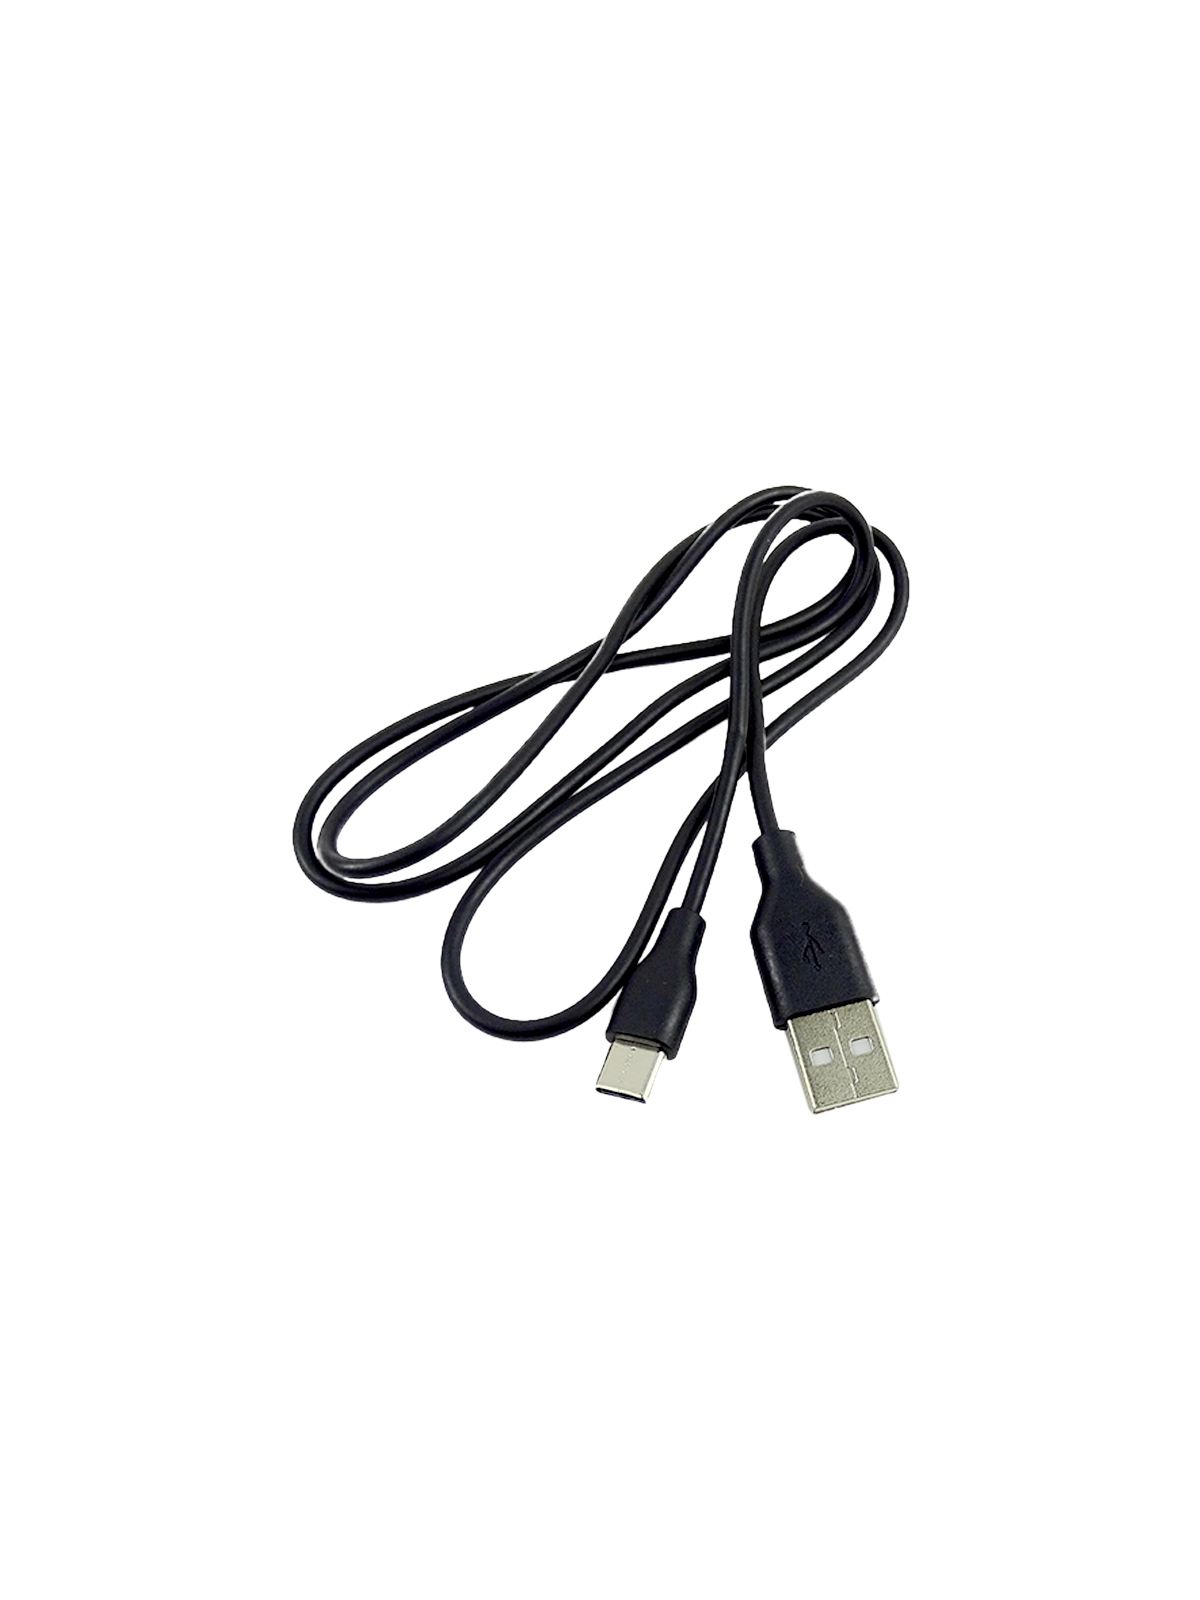 Дата-кабель "Exployd", USB - TYPE-C, круглый, чёрный, 1 м.